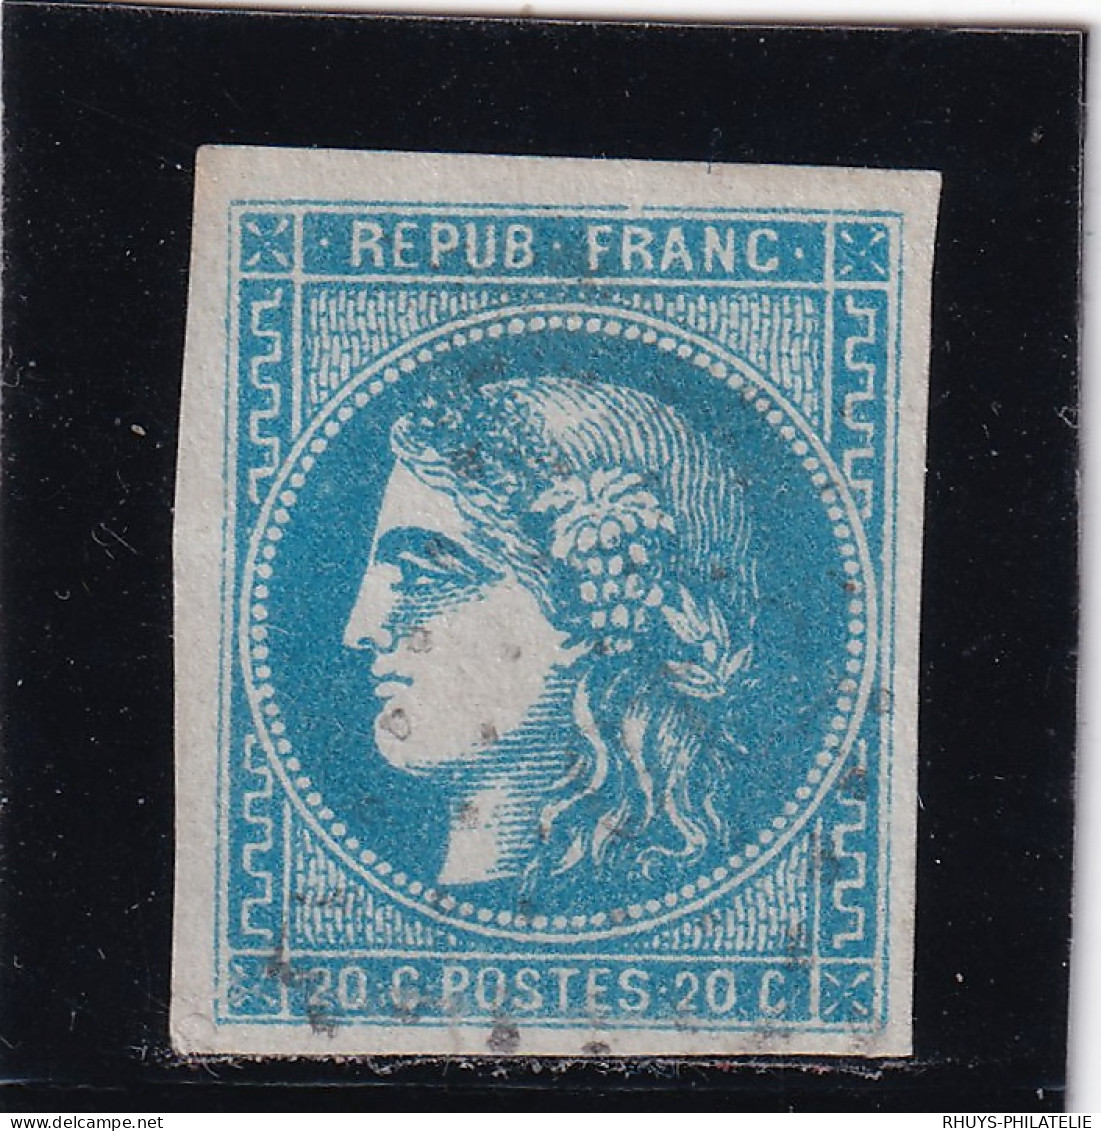 EMISSION DE BORDEAUX – O – N°46B - 1870 Bordeaux Printing